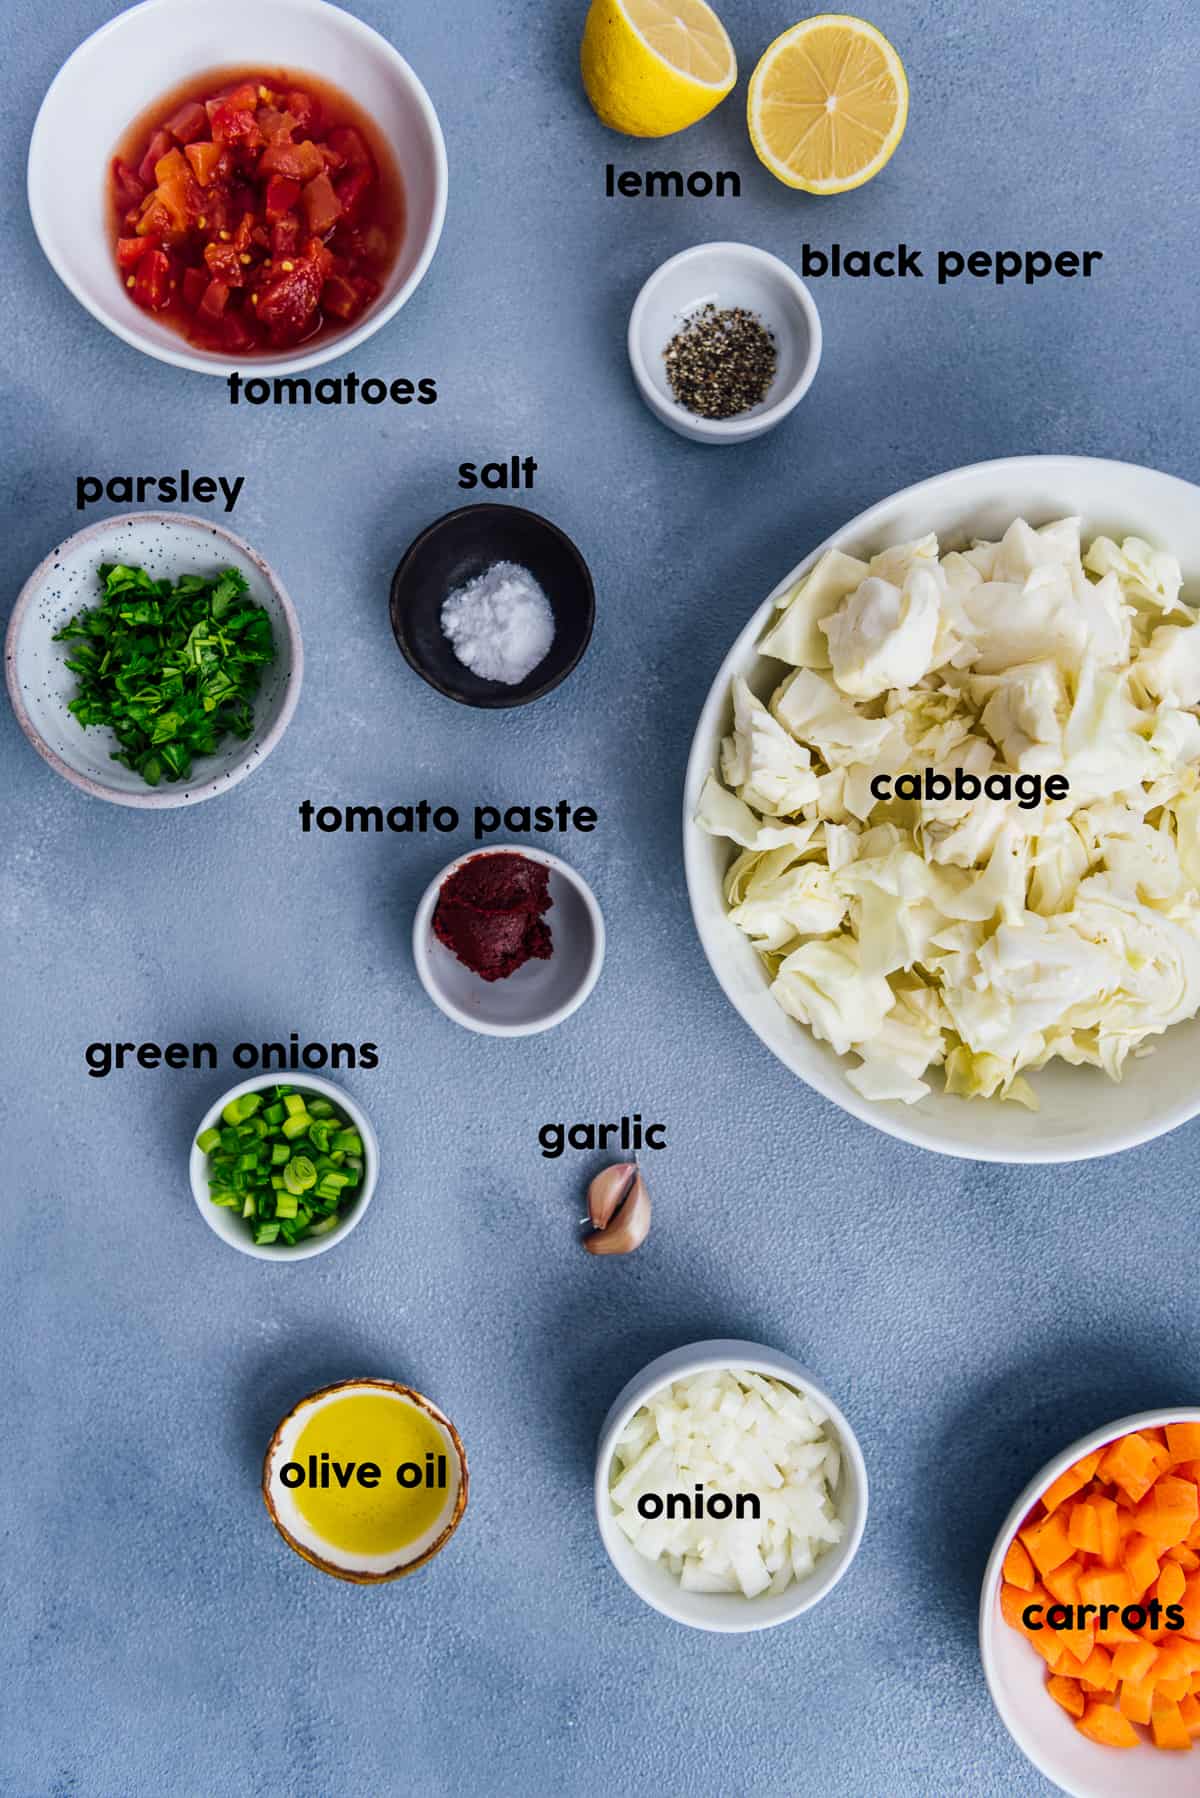 卷心菜丝、胡萝卜碎、欧芹和葱、番茄碎、番茄酱、蒜瓣、洋葱、香料和柠檬都放在灰色的背景上。